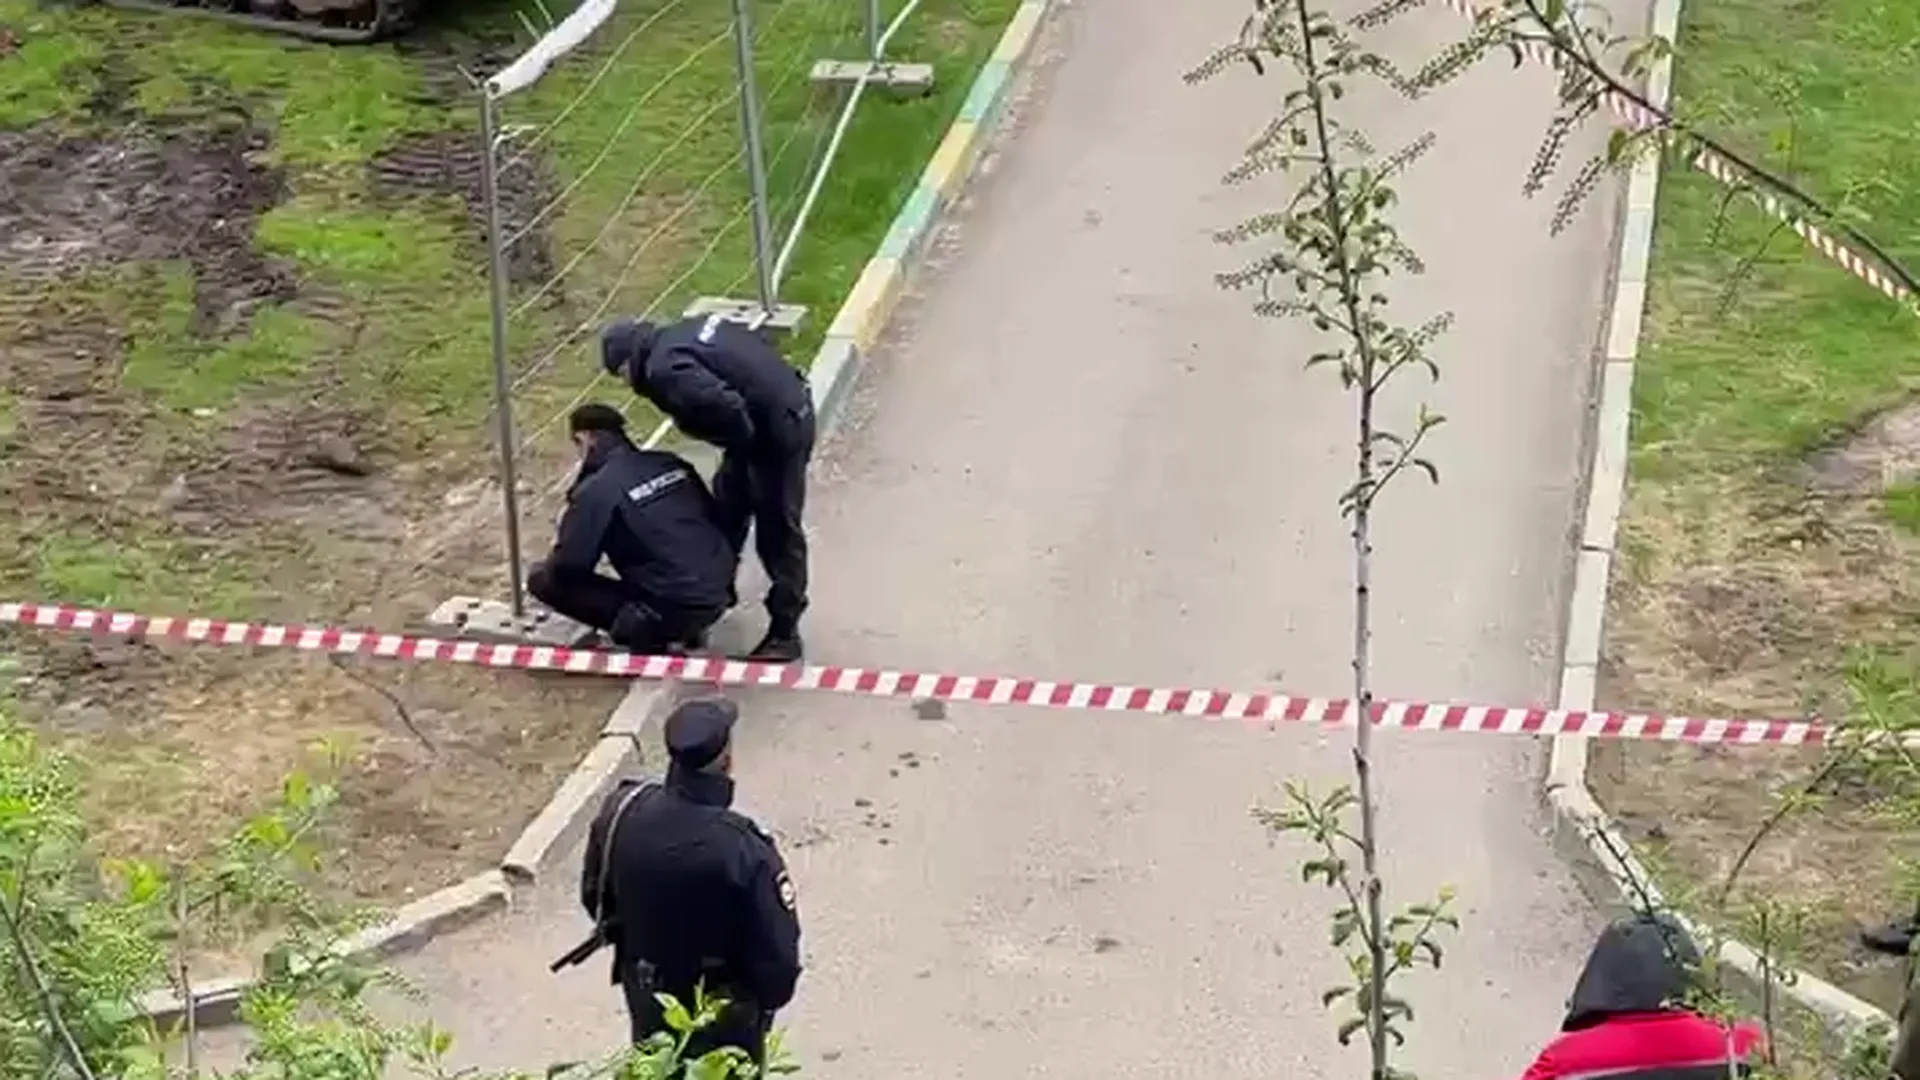 Появилось видео работы спецслужб в московском дворе, где нашли похожий на мину предмет